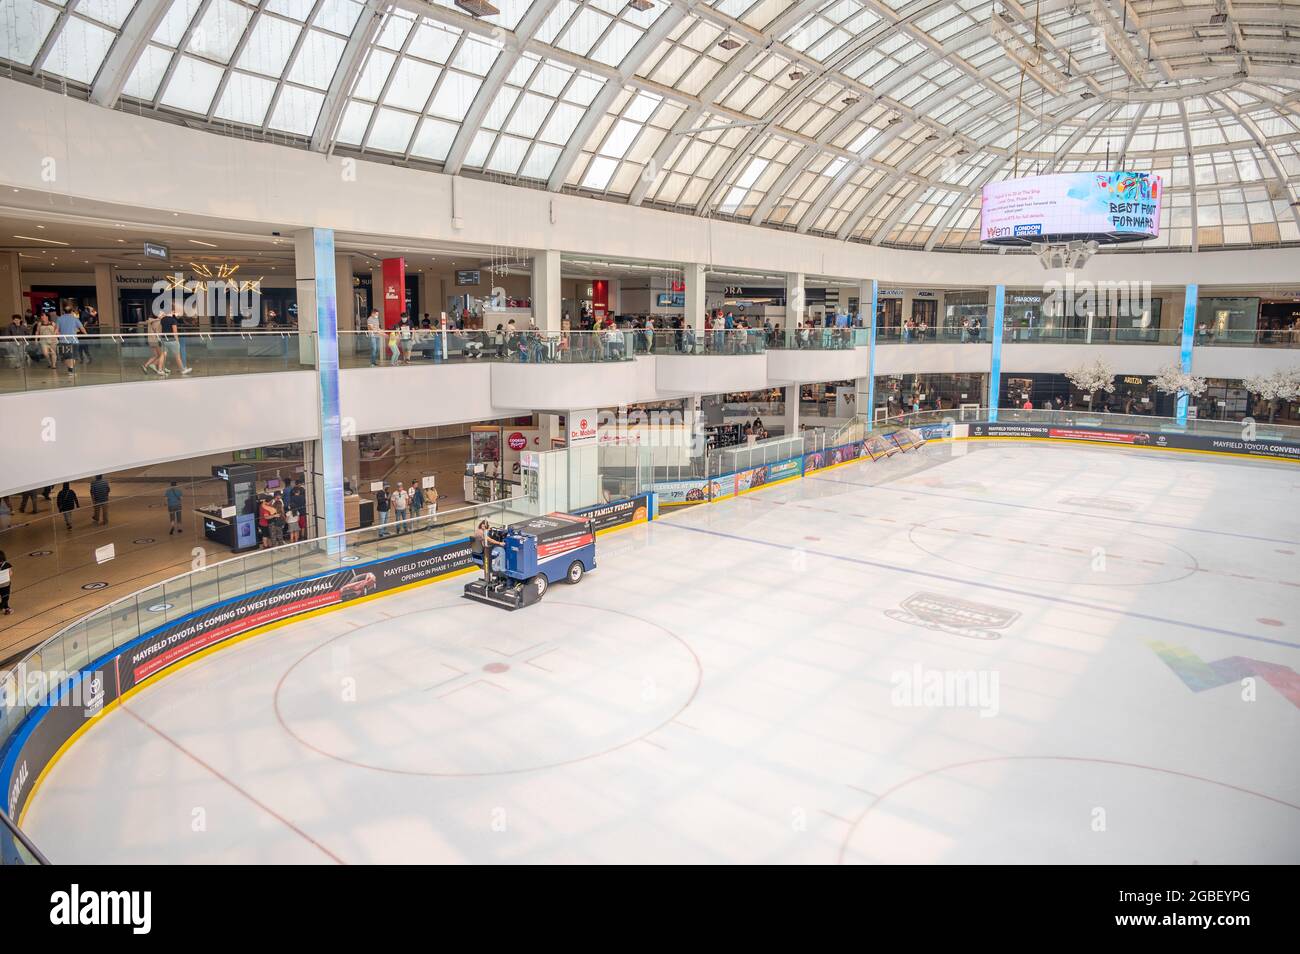 Edmonton, Alberta - August 1, 2021: Ice at the West edmonton Mall Ice Palace. Stock Photo